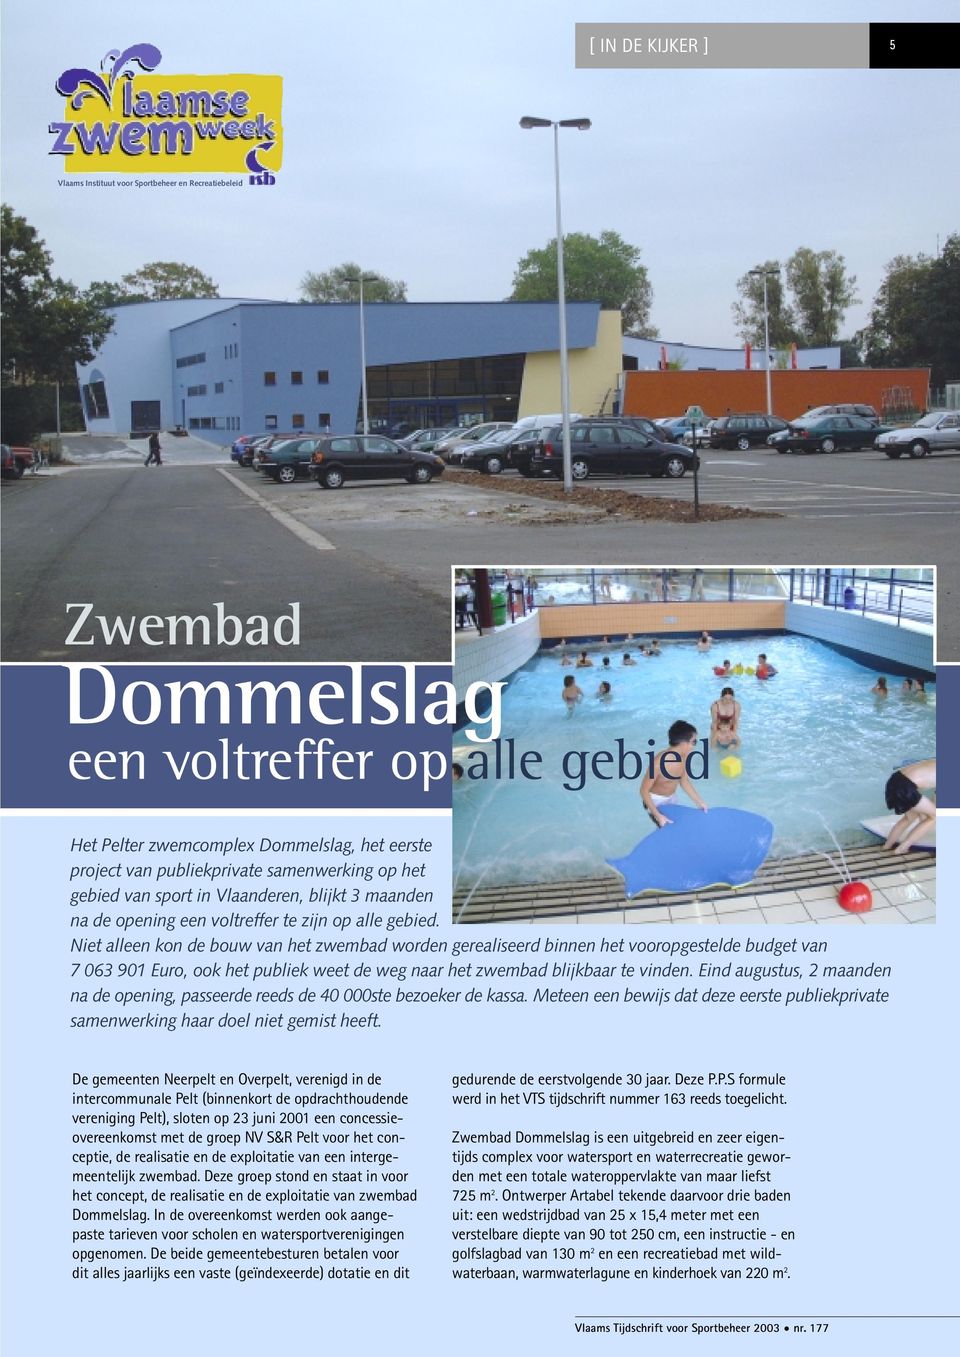 Niet alleen kon de bouw van het zwembad worden gerealiseerd binnen het vooropgestelde budget van 7 063 901 Euro, ook het publiek weet de weg naar het zwembad blijkbaar te vinden.